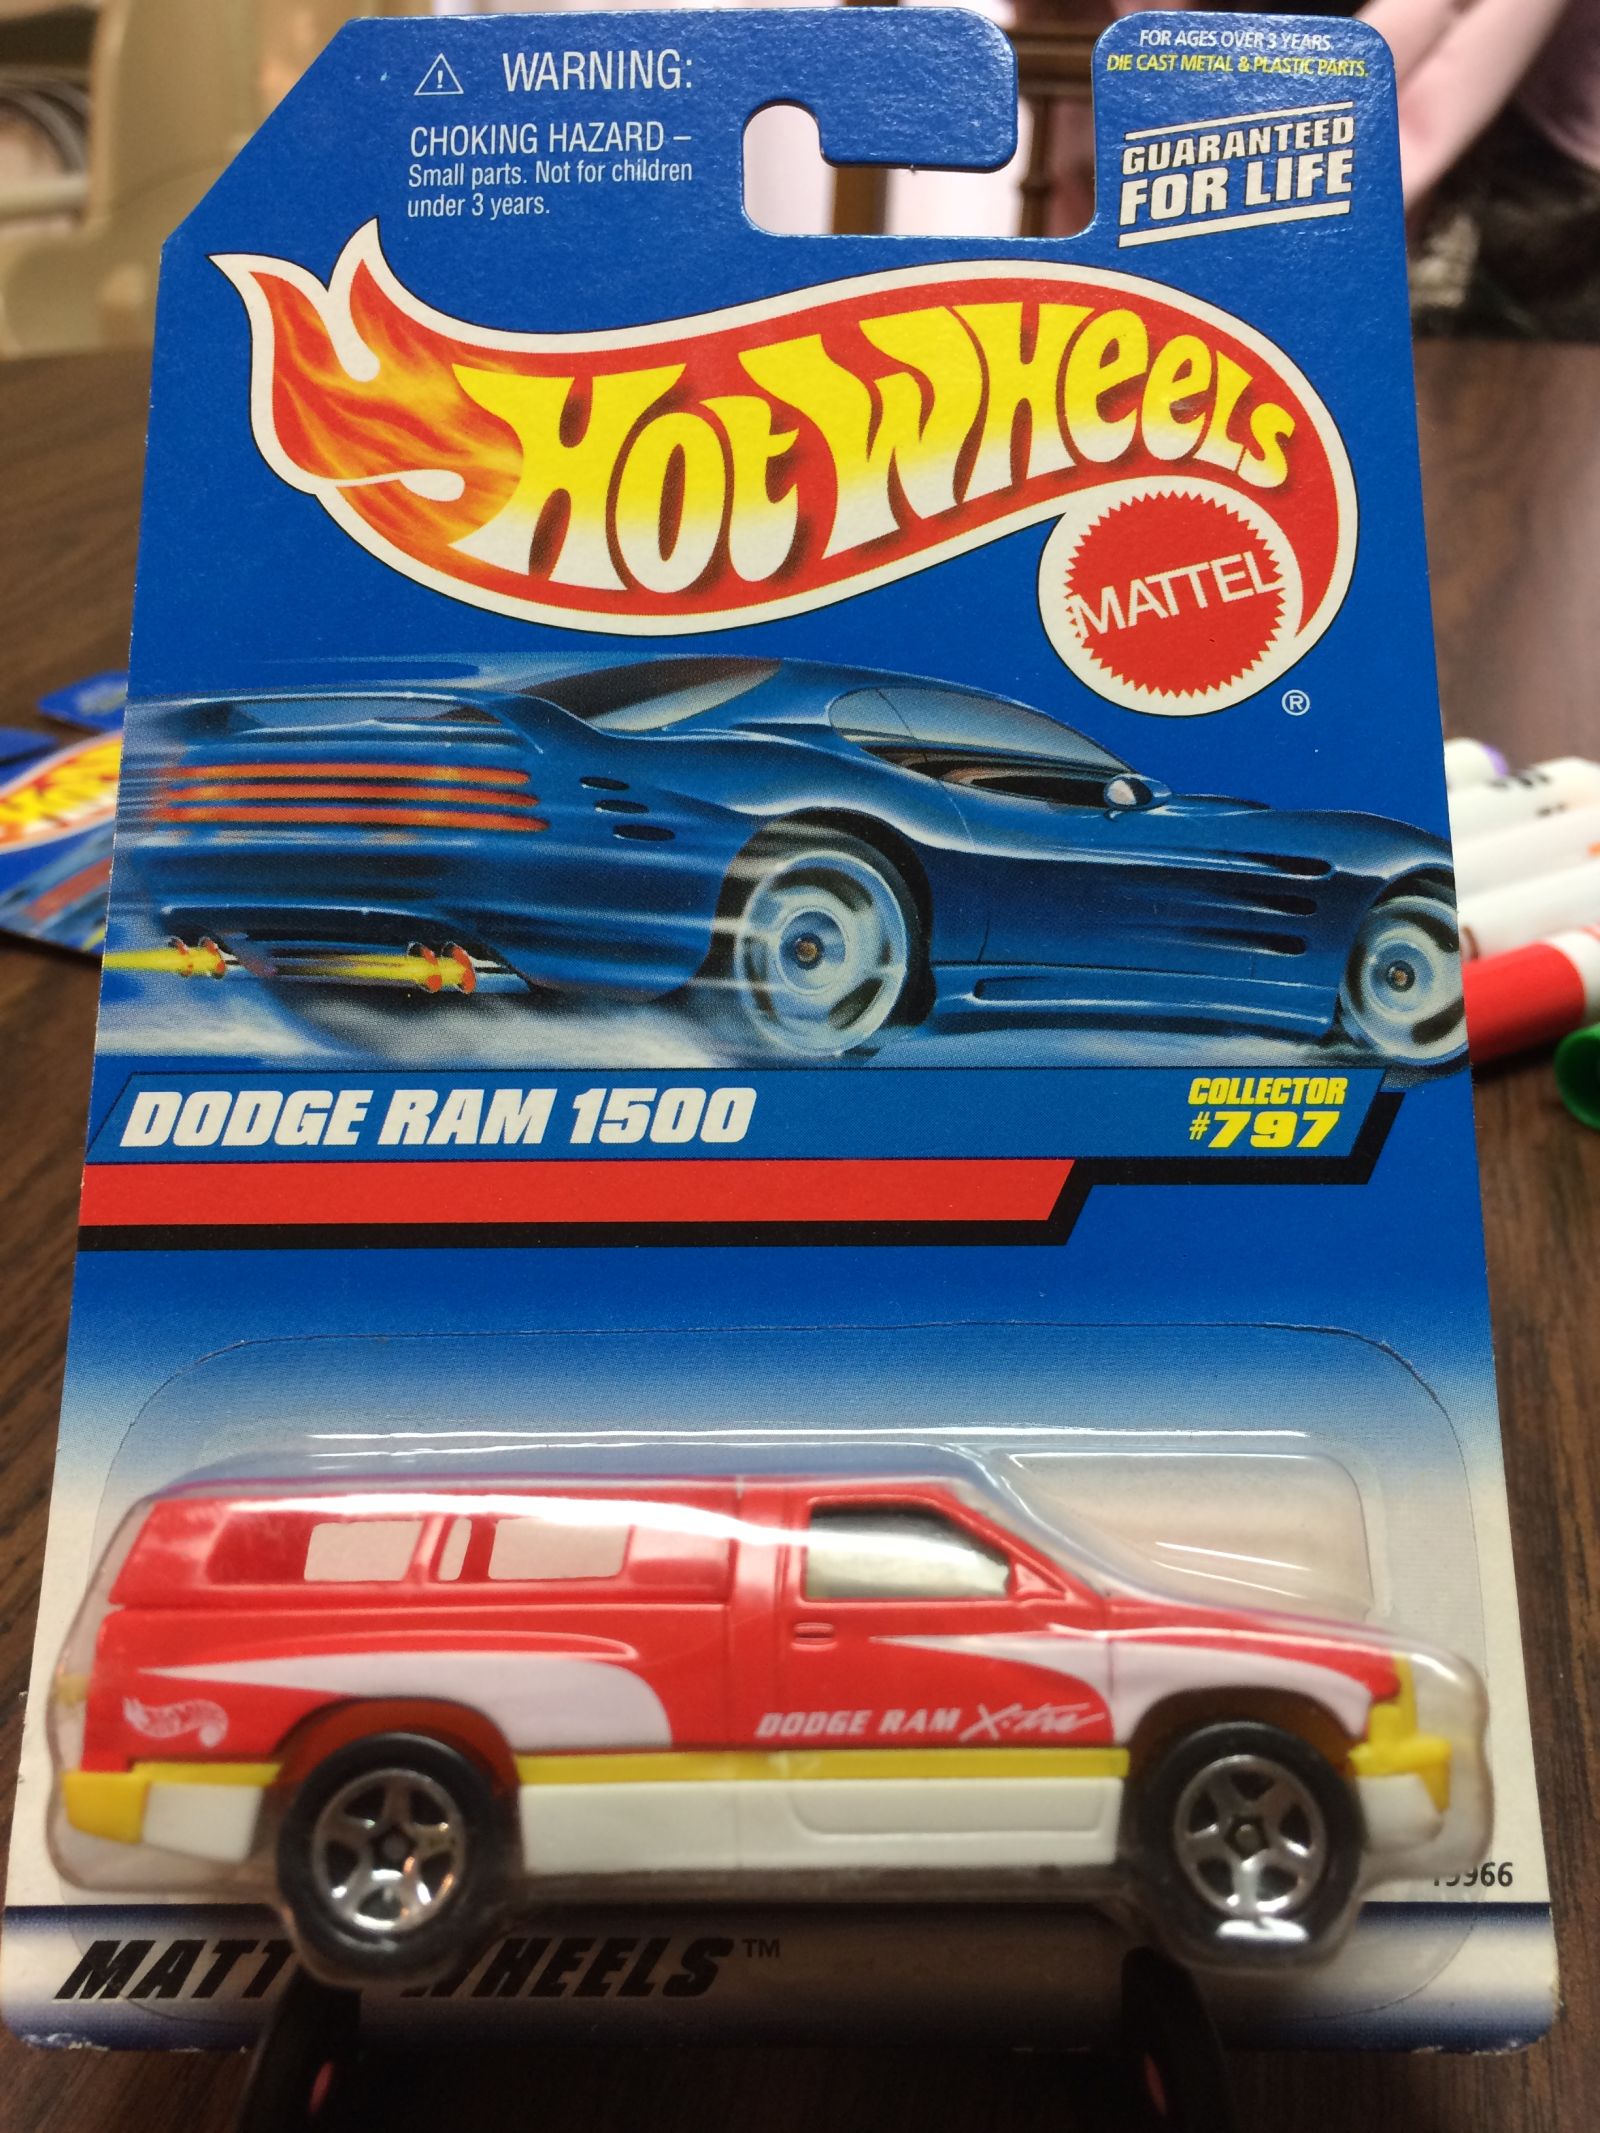 Illustration for article titled Dodge Ram 1500